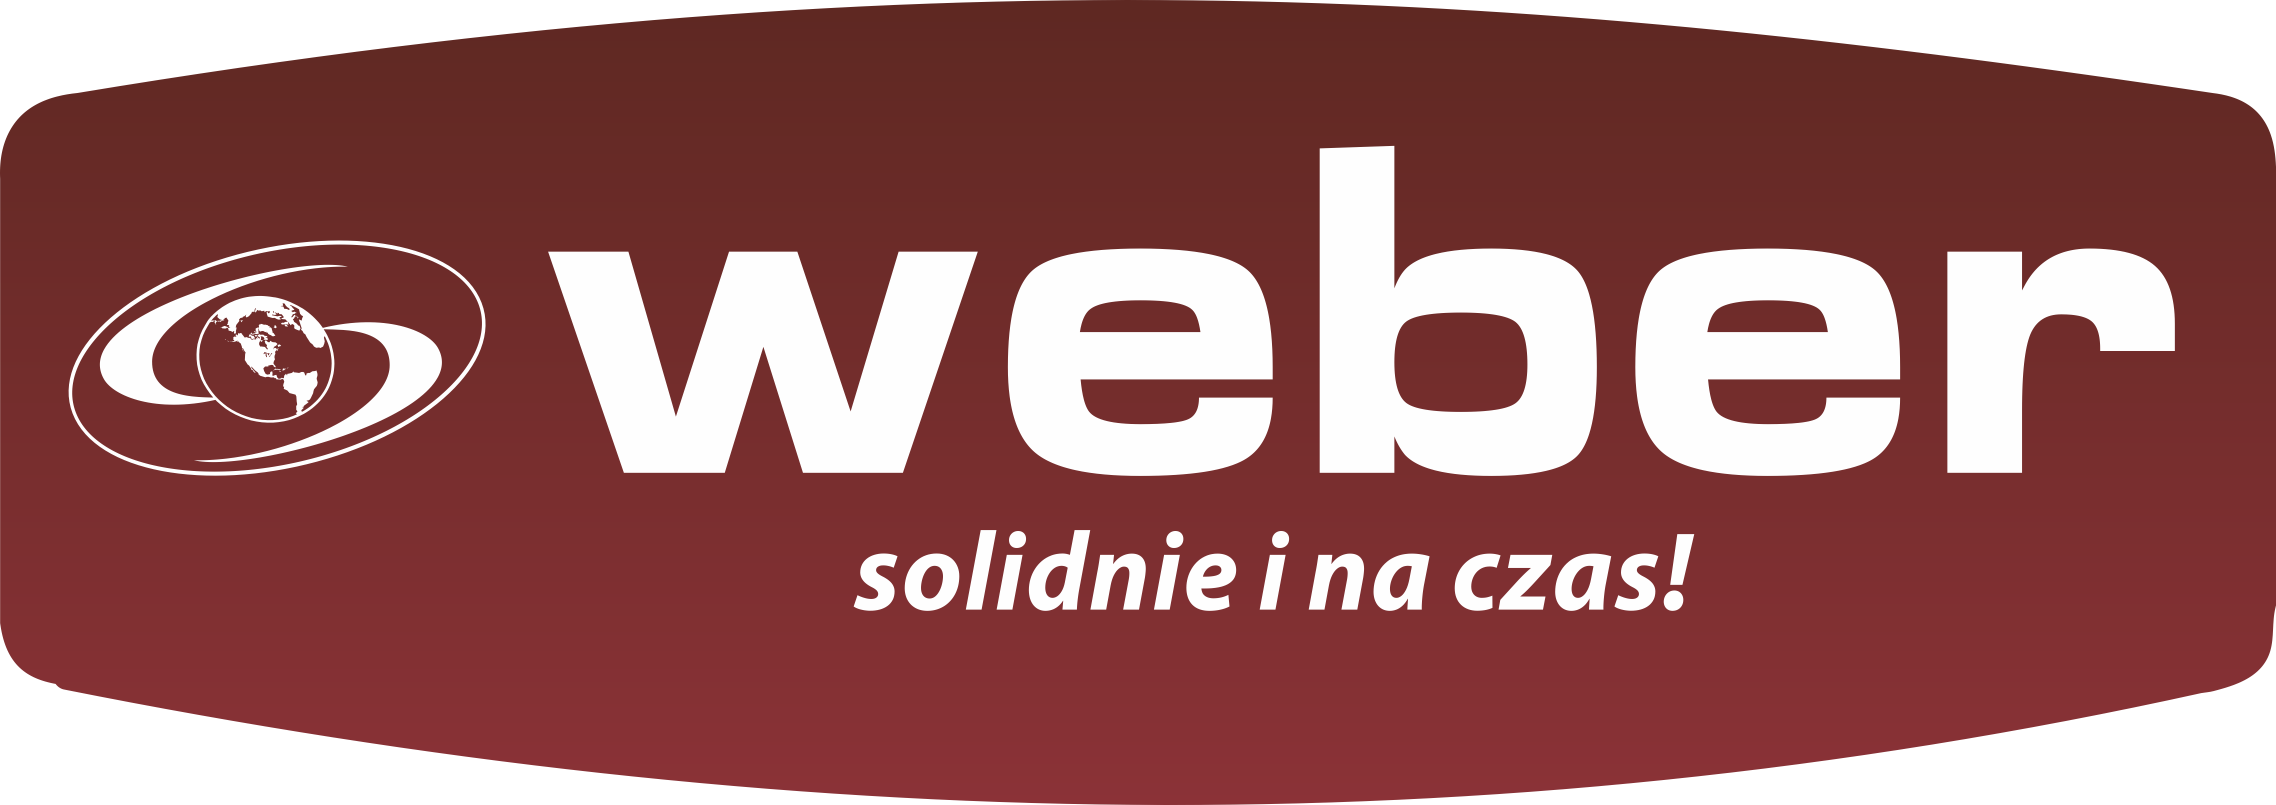 Weber - Firma Tłumaczeń i Usług